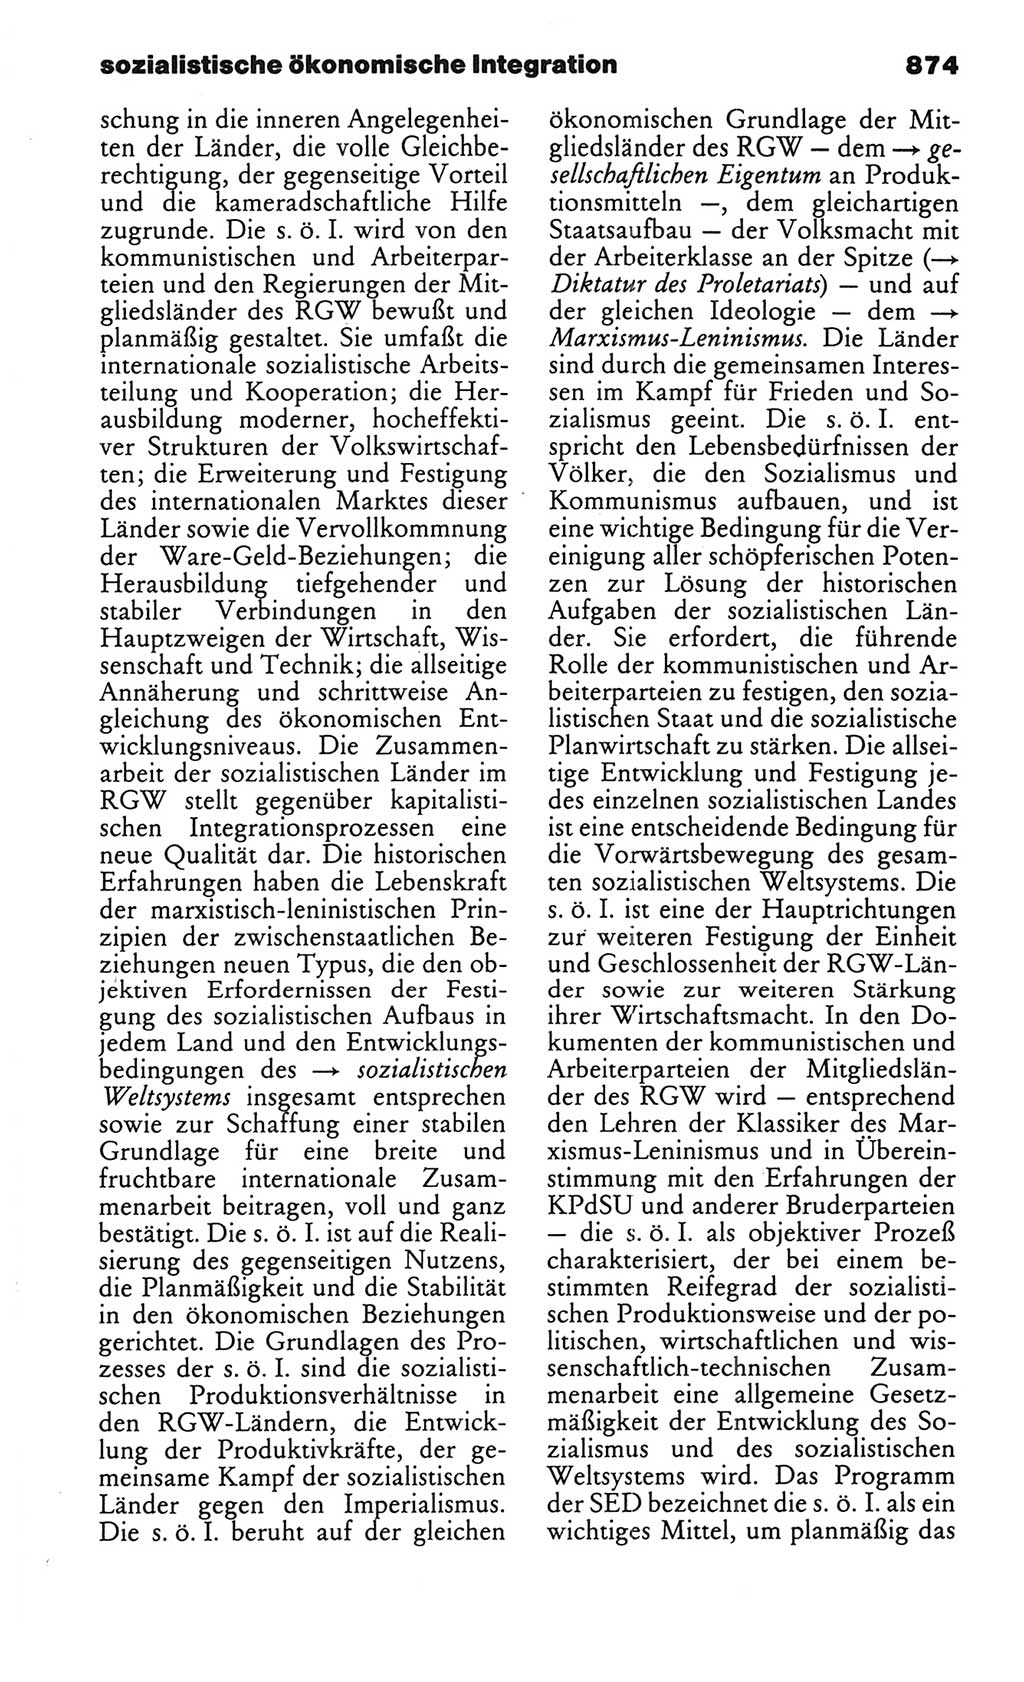 Kleines politisches Wörterbuch [Deutsche Demokratische Republik (DDR)] 1986, Seite 874 (Kl. pol. Wb. DDR 1986, S. 874)